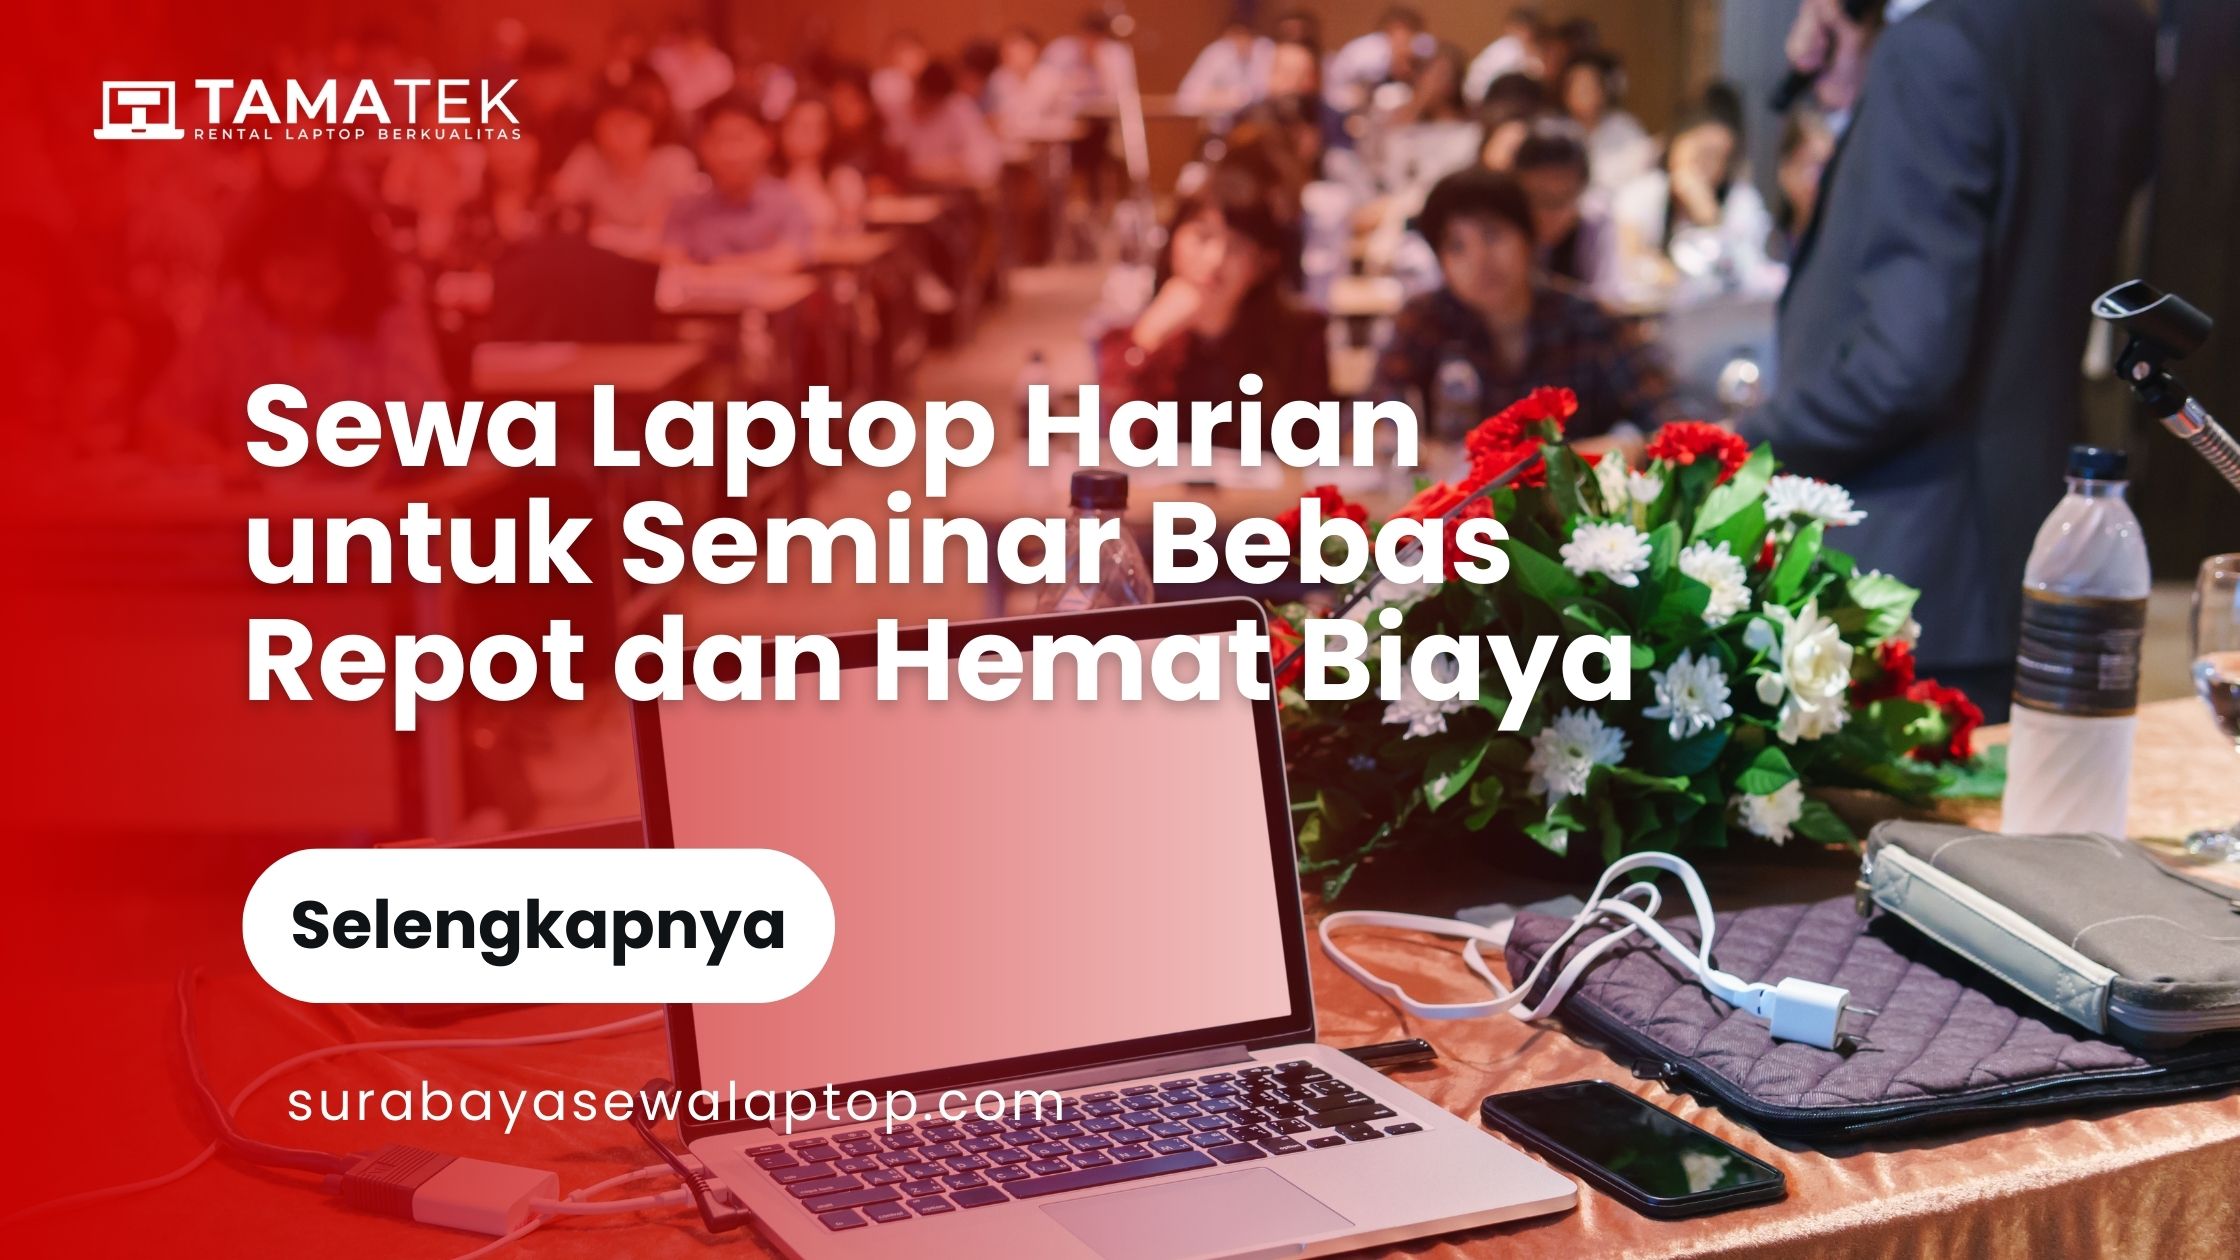 Sewa laptop harian untuk seminar